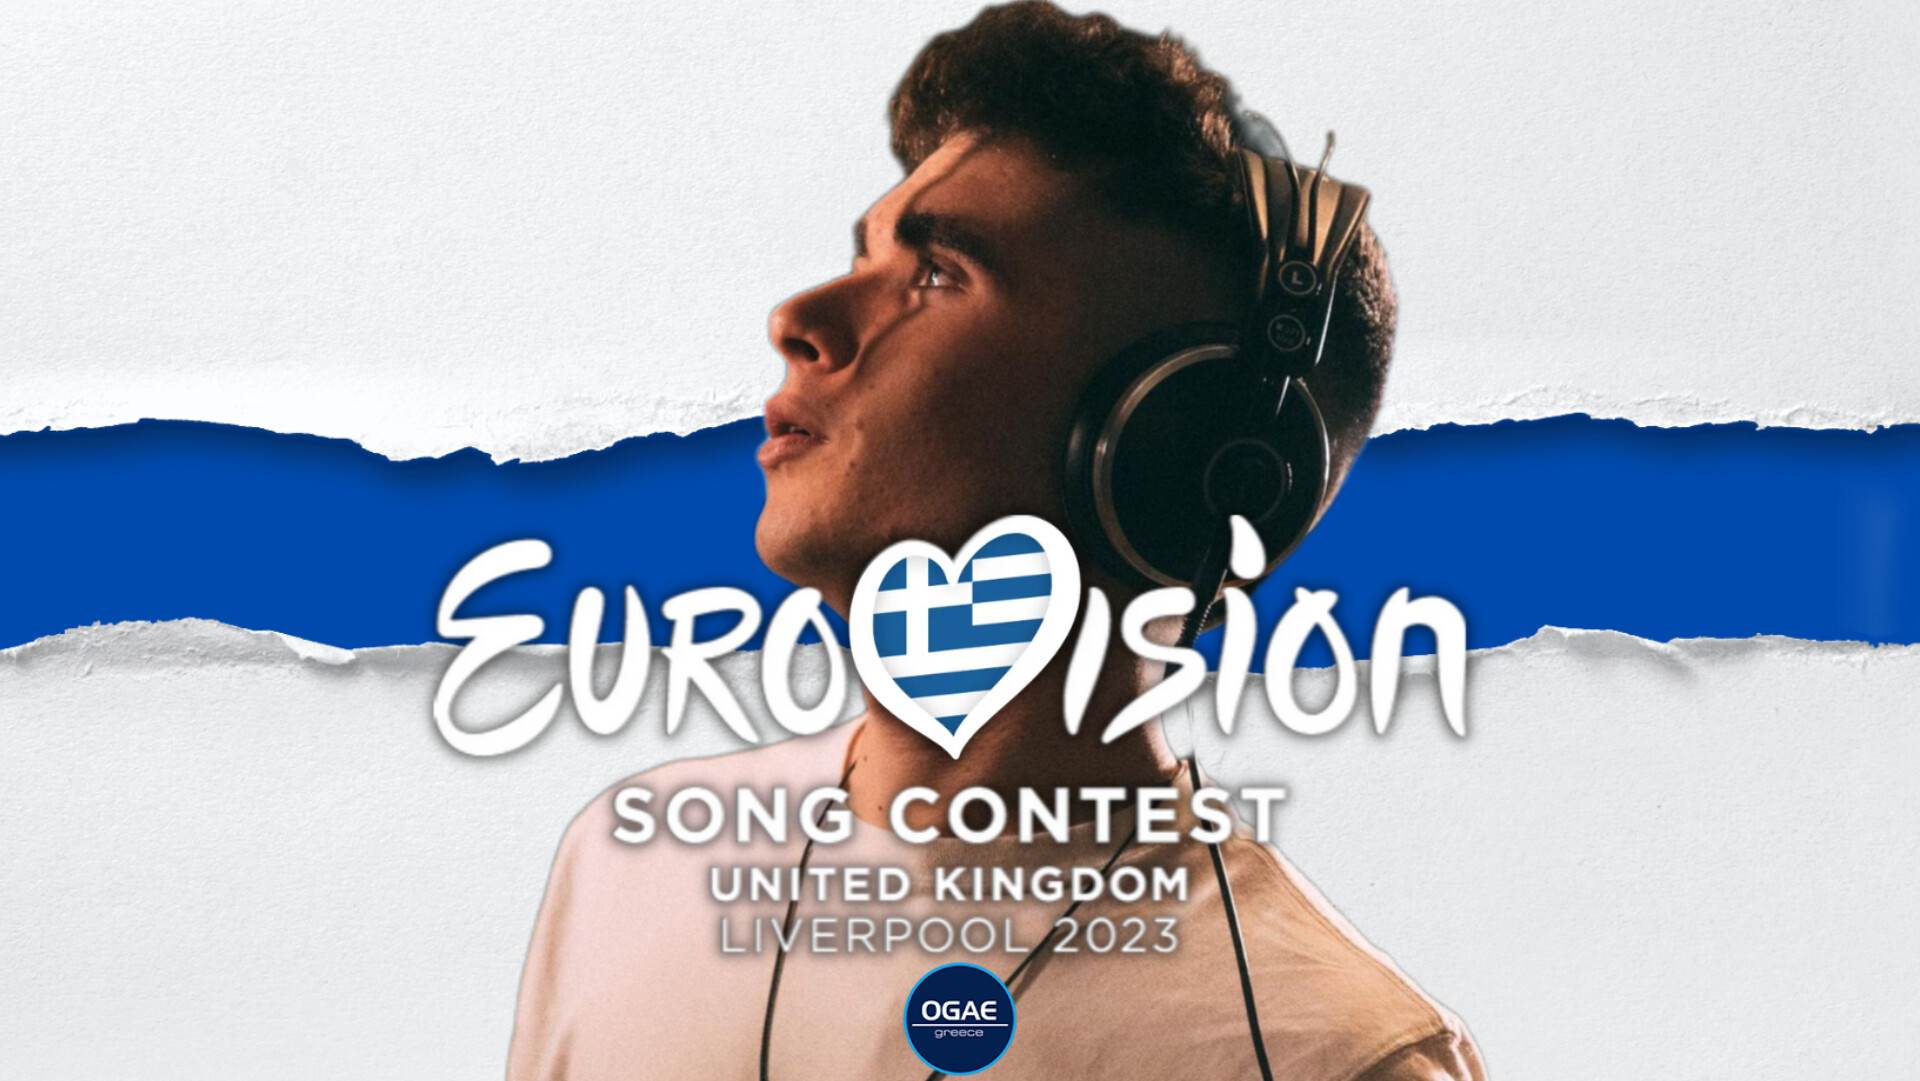 https://ogaegreece.com/wp-content/uploads/2023/02/Victor-Vernicos-Eurovision-2023-Greece.jpg